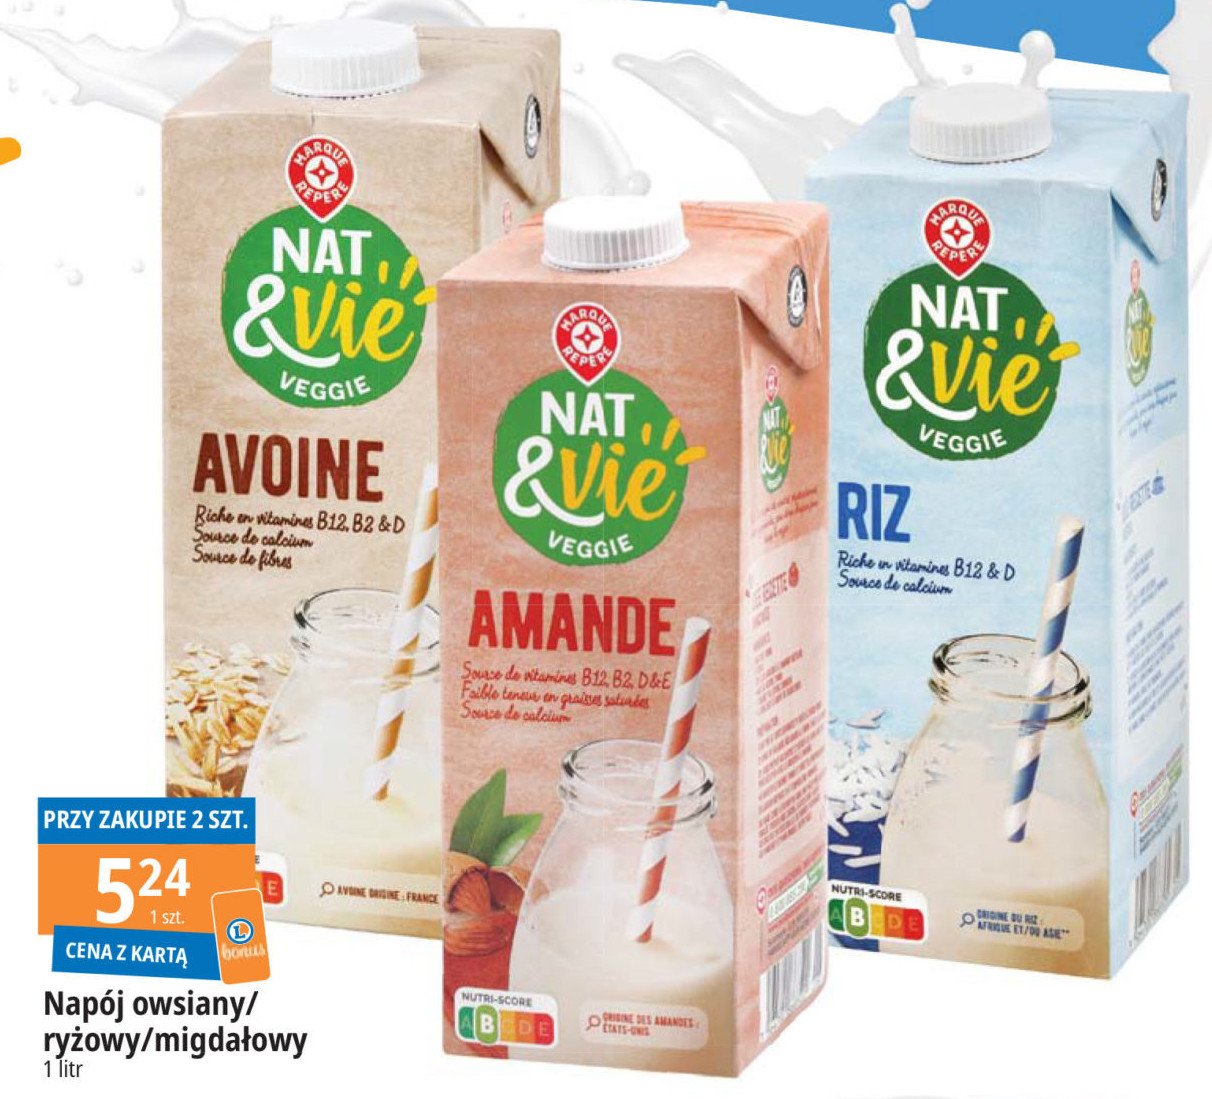 Napój ryżowy na bazie owsa Wiodąca marka nat & vie promocja